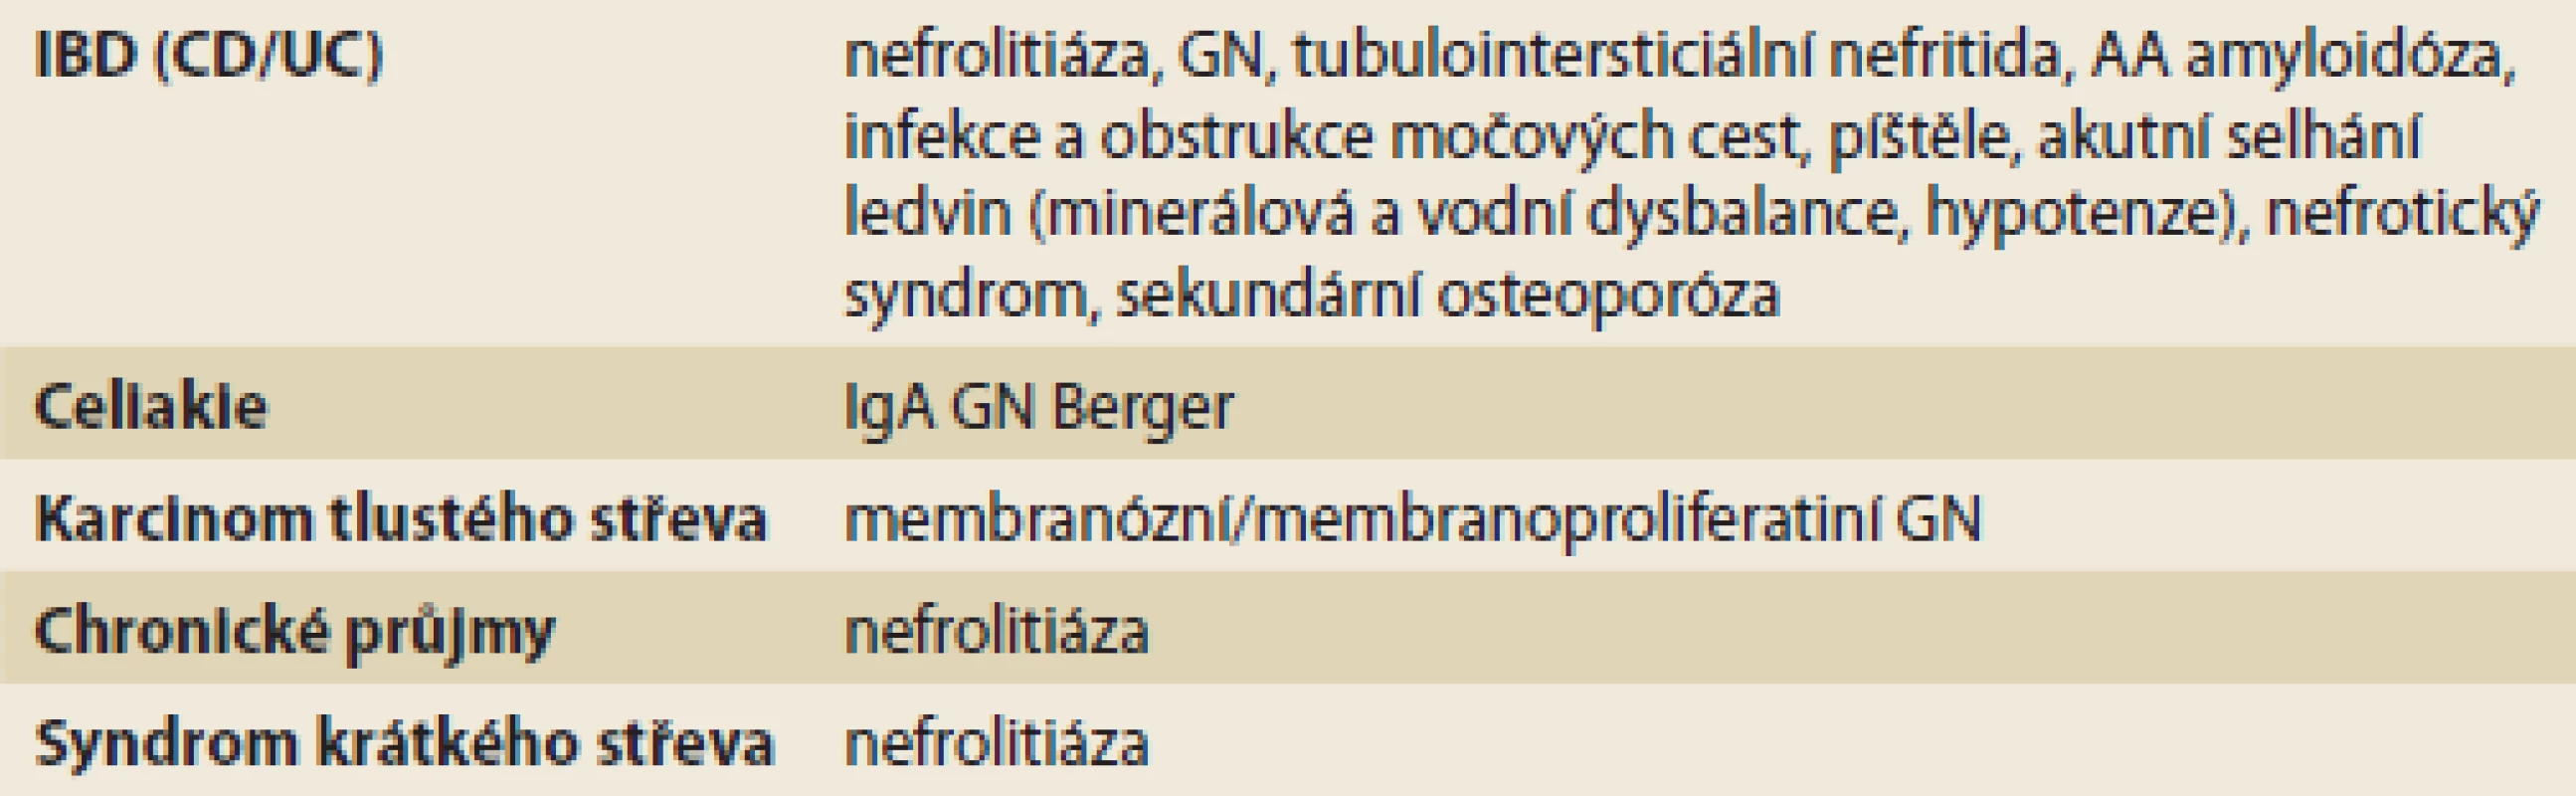 Onemocnění GIT s častými renálními komplikacemi.
Tab. 2. GIT disease with frequent renal complications.